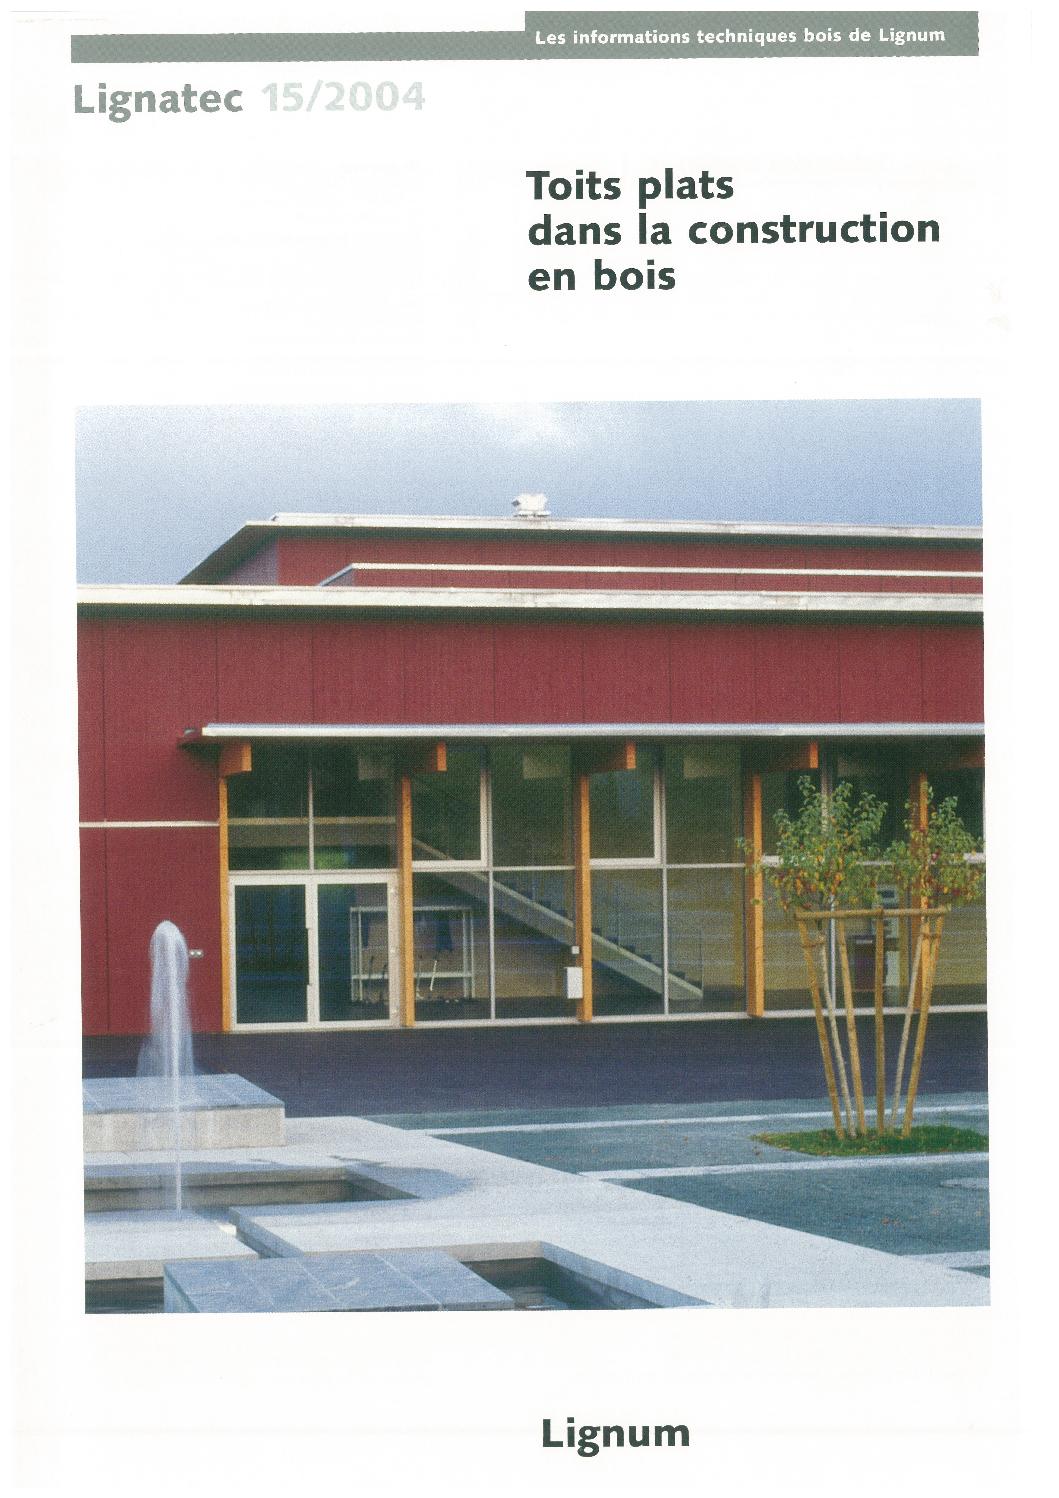 Table En Bois Exterieur Best Of toits Plats Dans La Construction En Bois by Lignum issuu